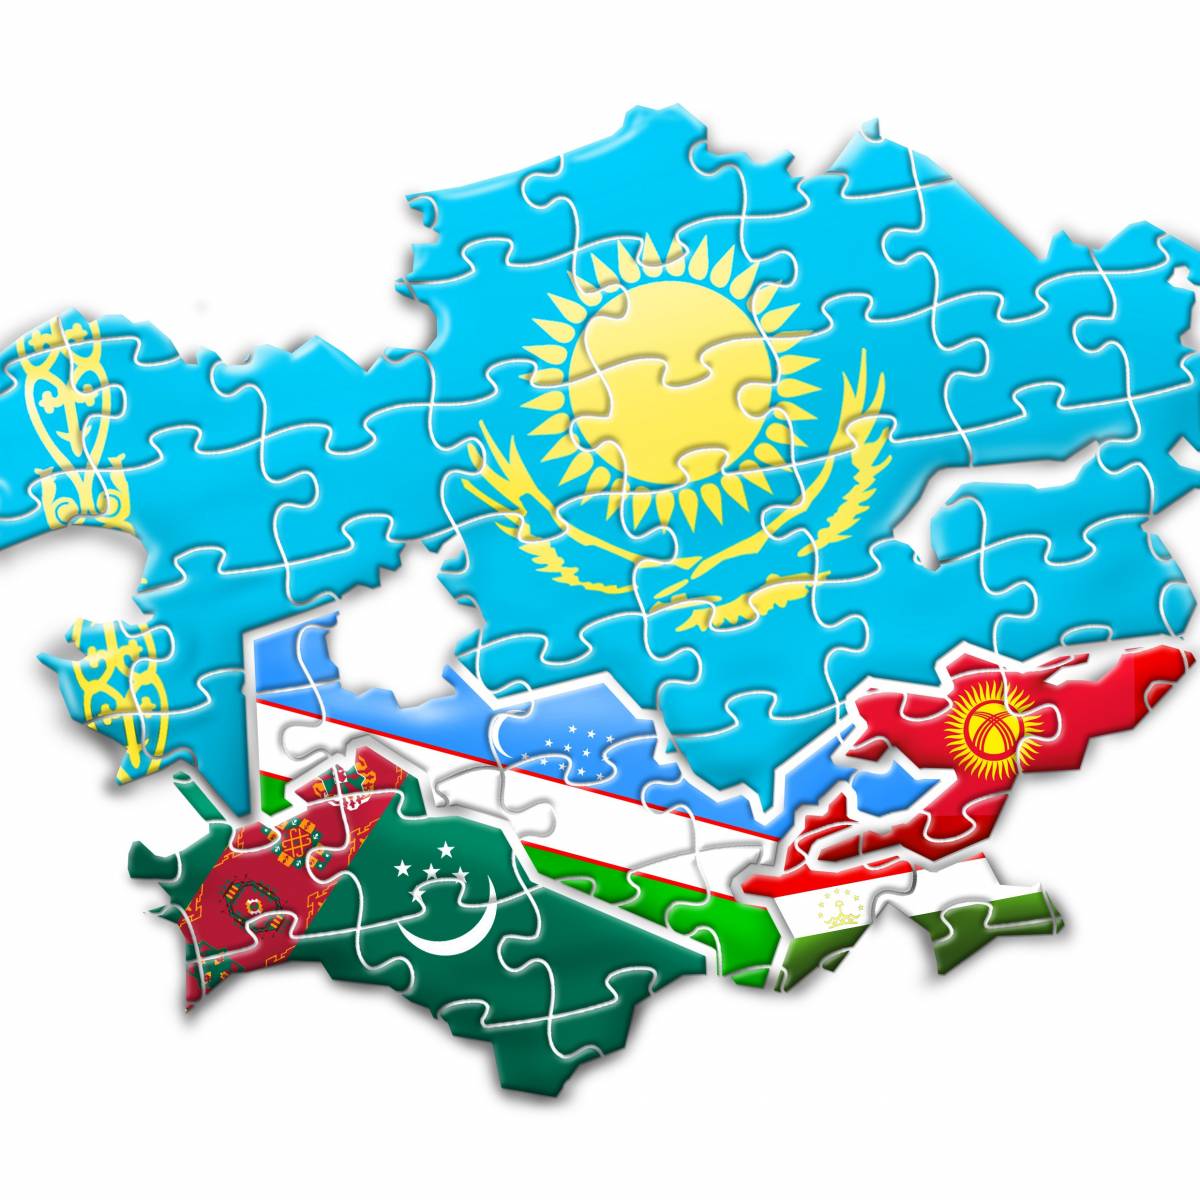 О специфике и вызовах soft power государств исламского мира в Средней Азии